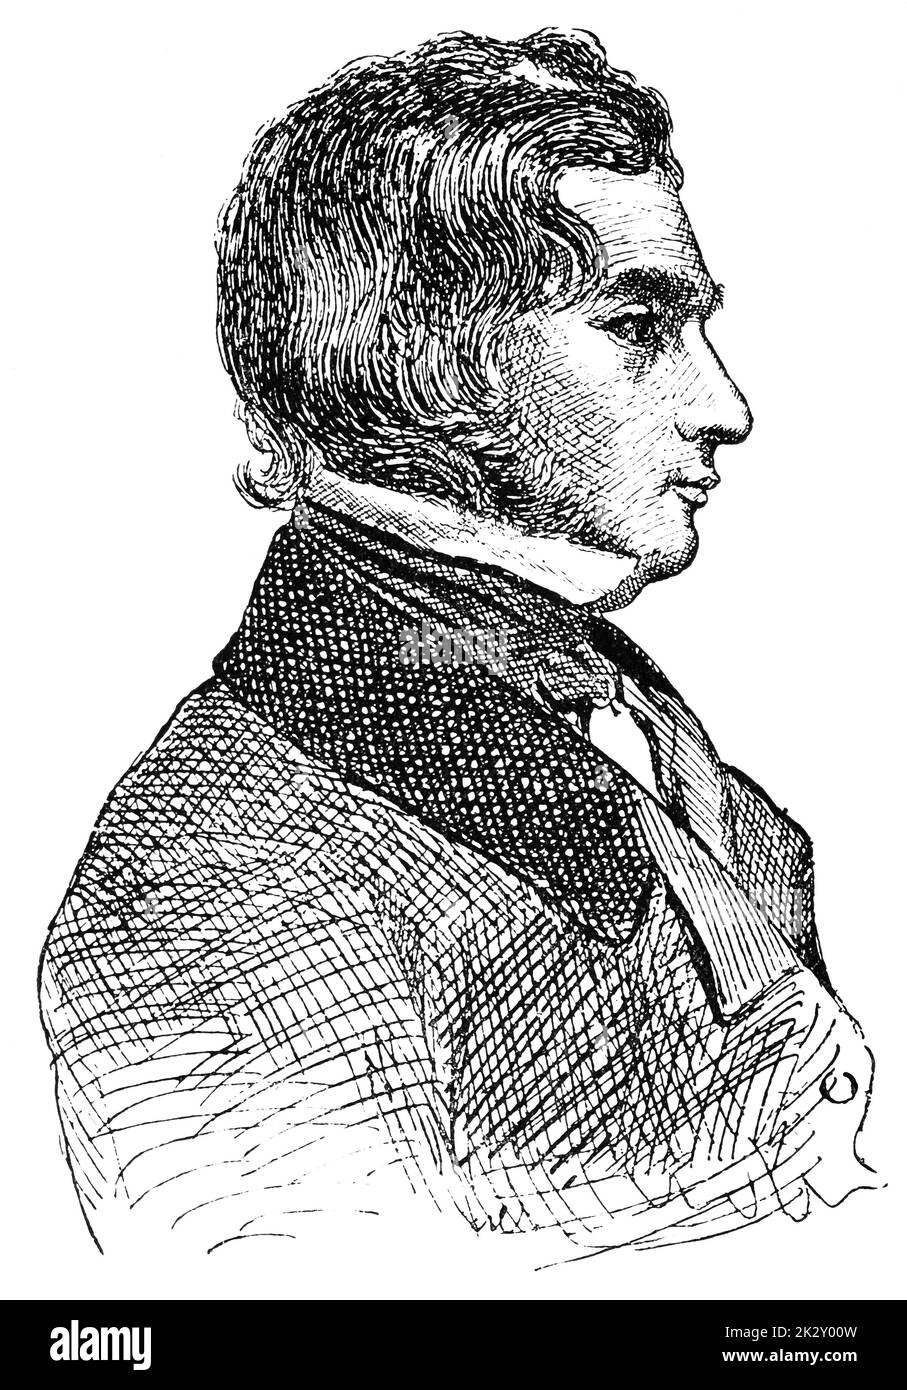 Portrait d'Henry Wadsworth Longfellow - poète et éducateur américain. Illustration du 19e siècle. Arrière-plan blanc. Banque D'Images